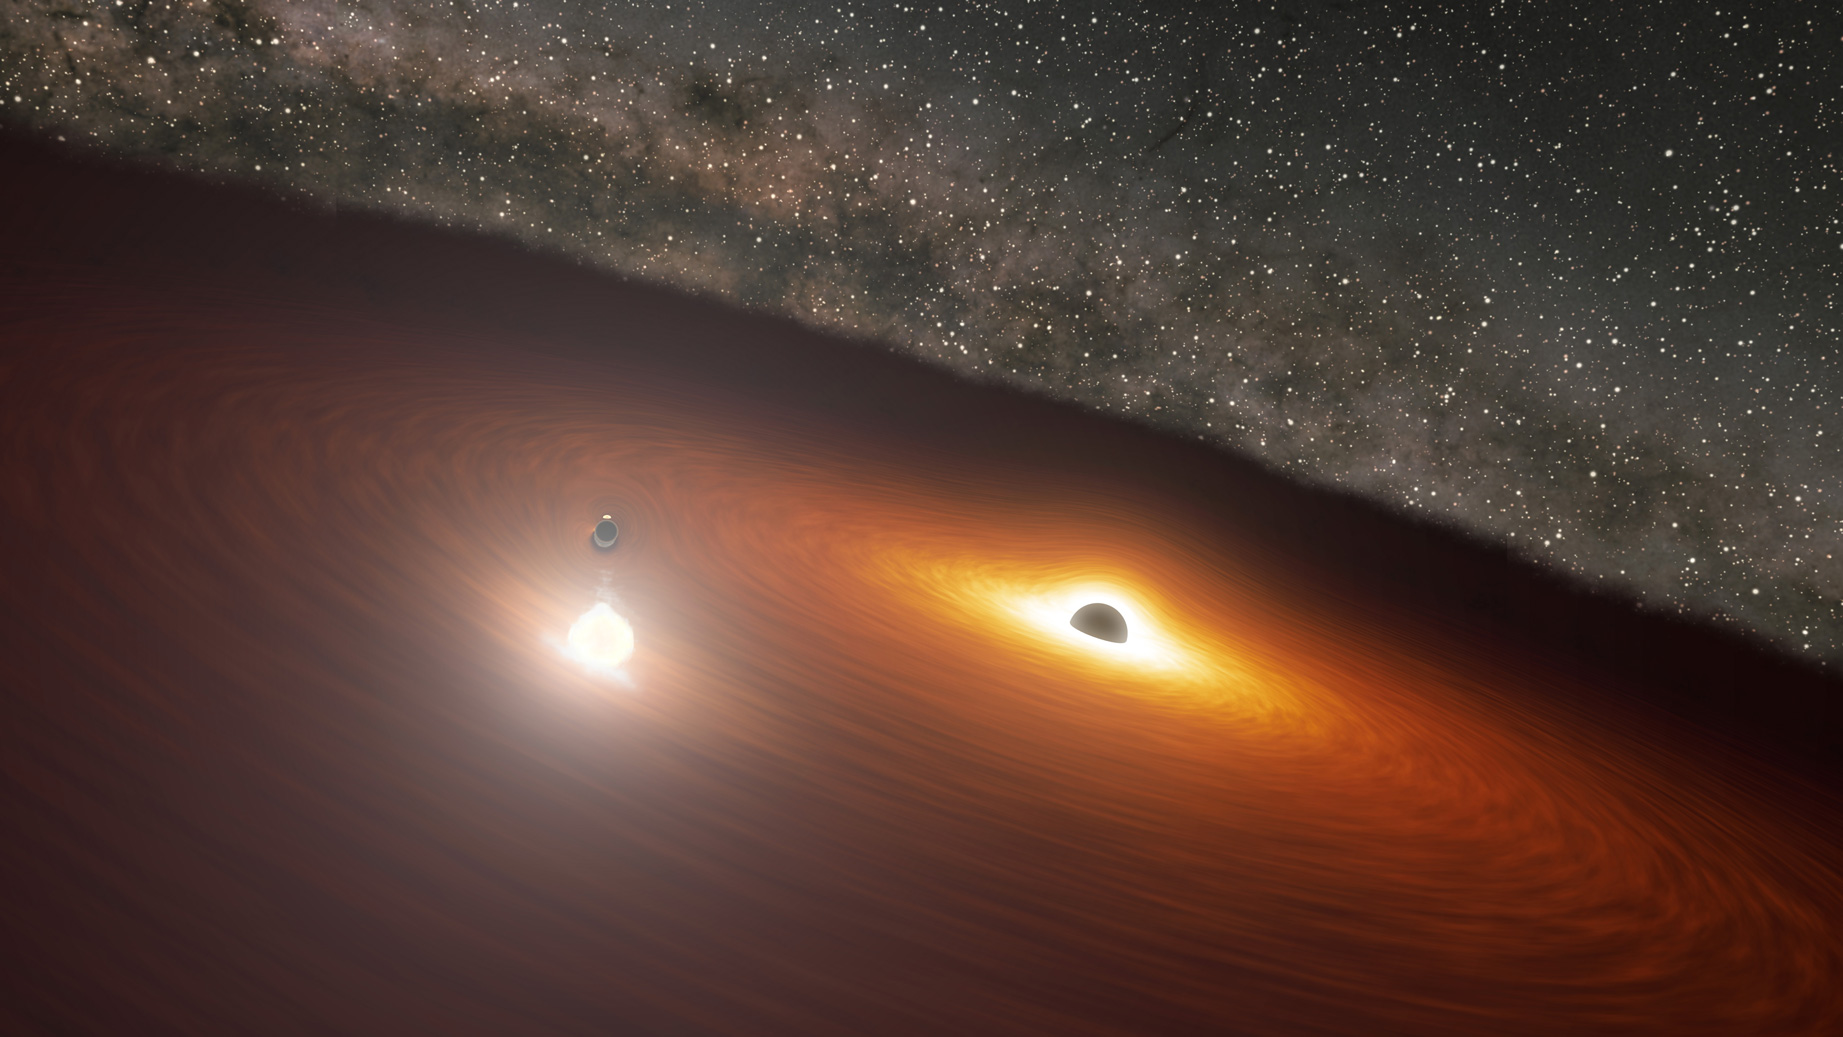 巨蟹座方向的OJ 287星系中心的怪物黑洞实际上是2个